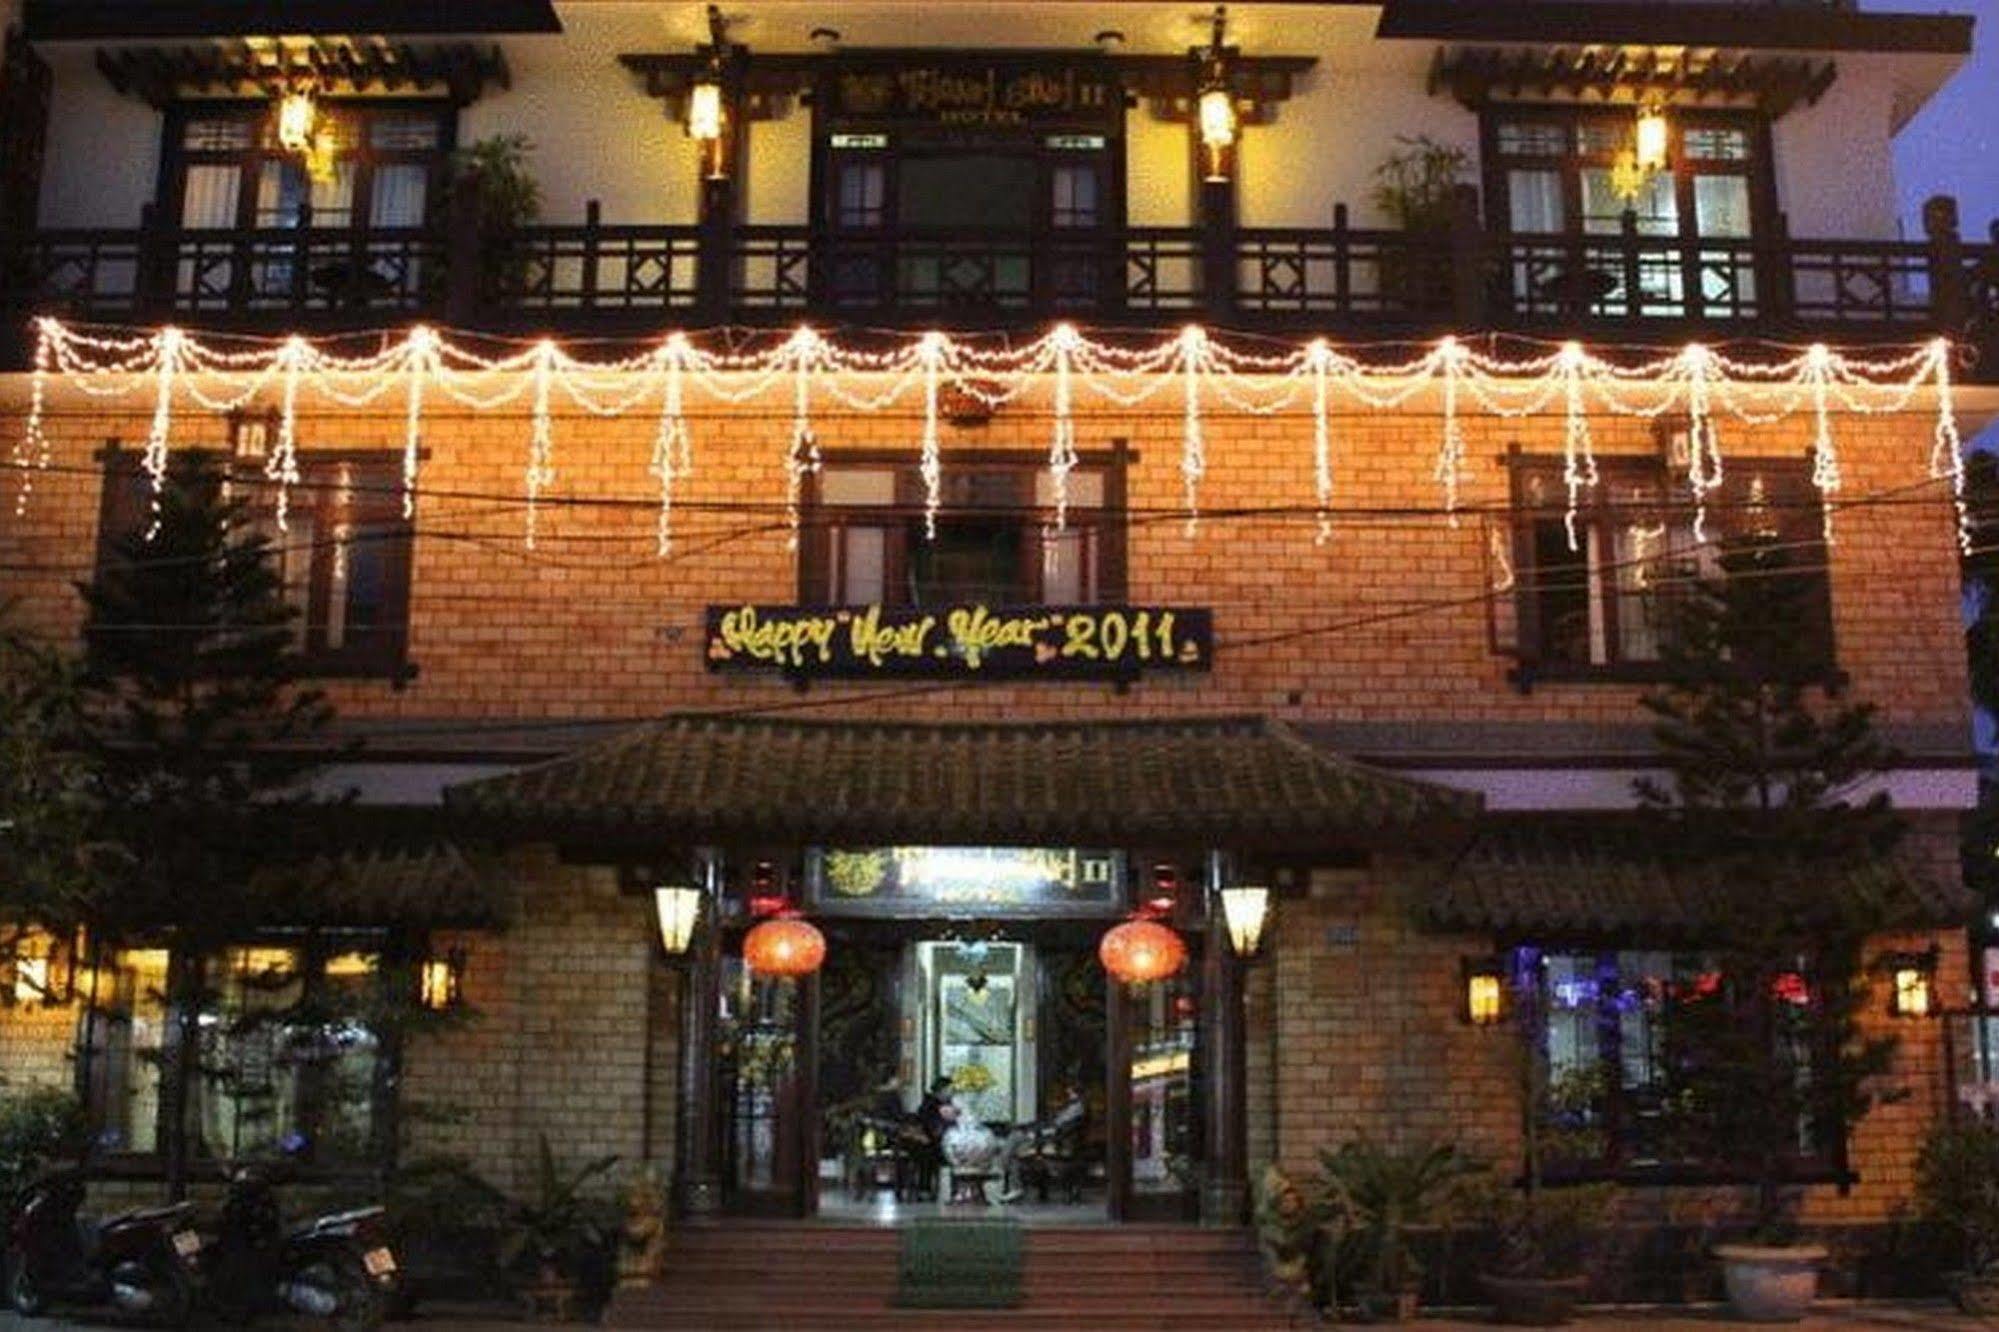 Thanh Binh 2 Hotel ฮอยอัน ภายนอก รูปภาพ